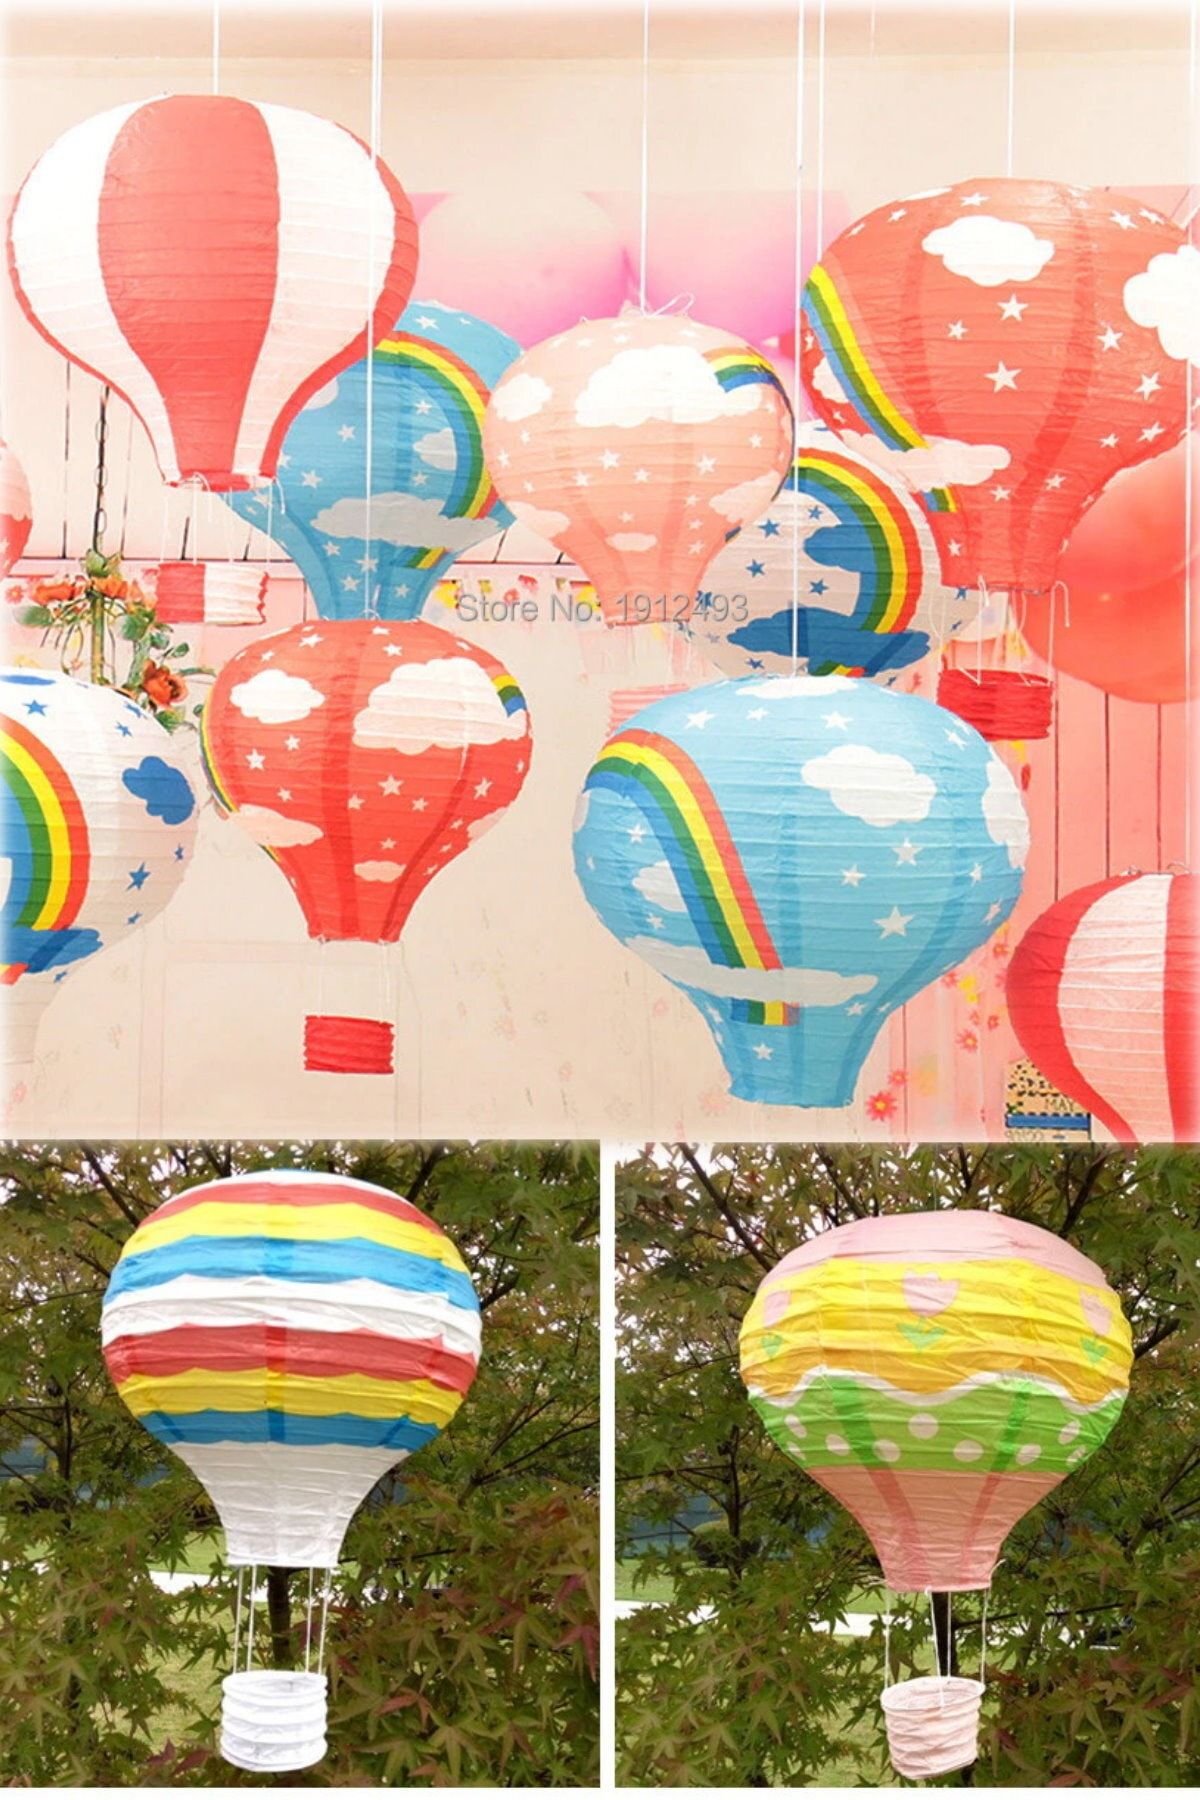 Utelips 10 Adet Dilek Feneri Balon Japon Kağıt Gökkuşağı Baskılı Dilek Dekoratif Fener Eğlenceli Hediyelik